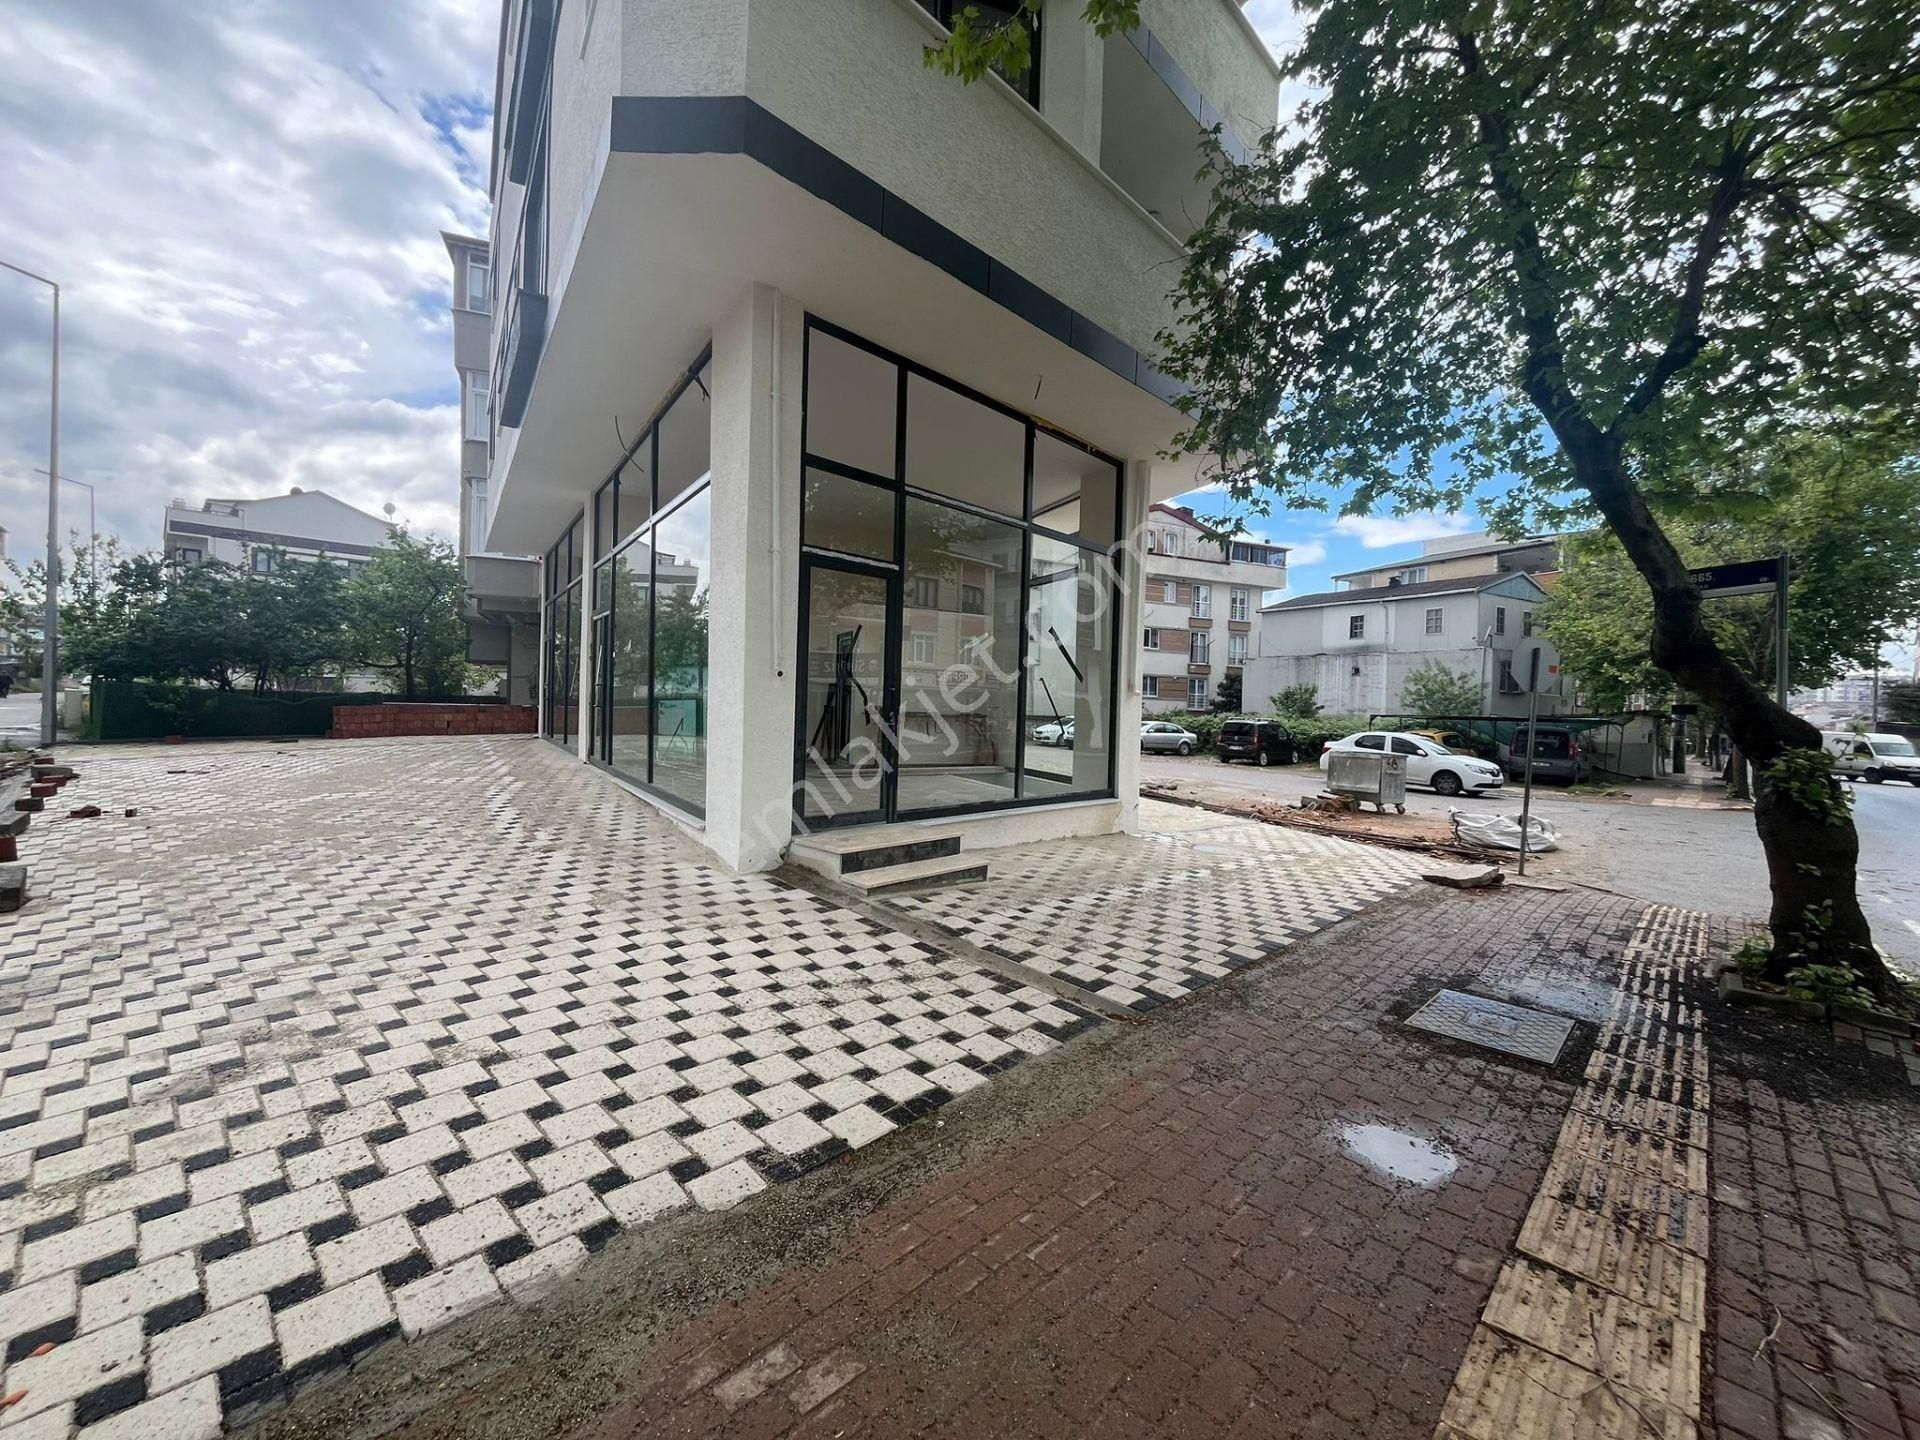 Darıca Osman Gazi Satılık Dükkan & Mağaza Atatürk caddesinde Uygun fiyata 200 m2 iskanlı Satılık Dükkan